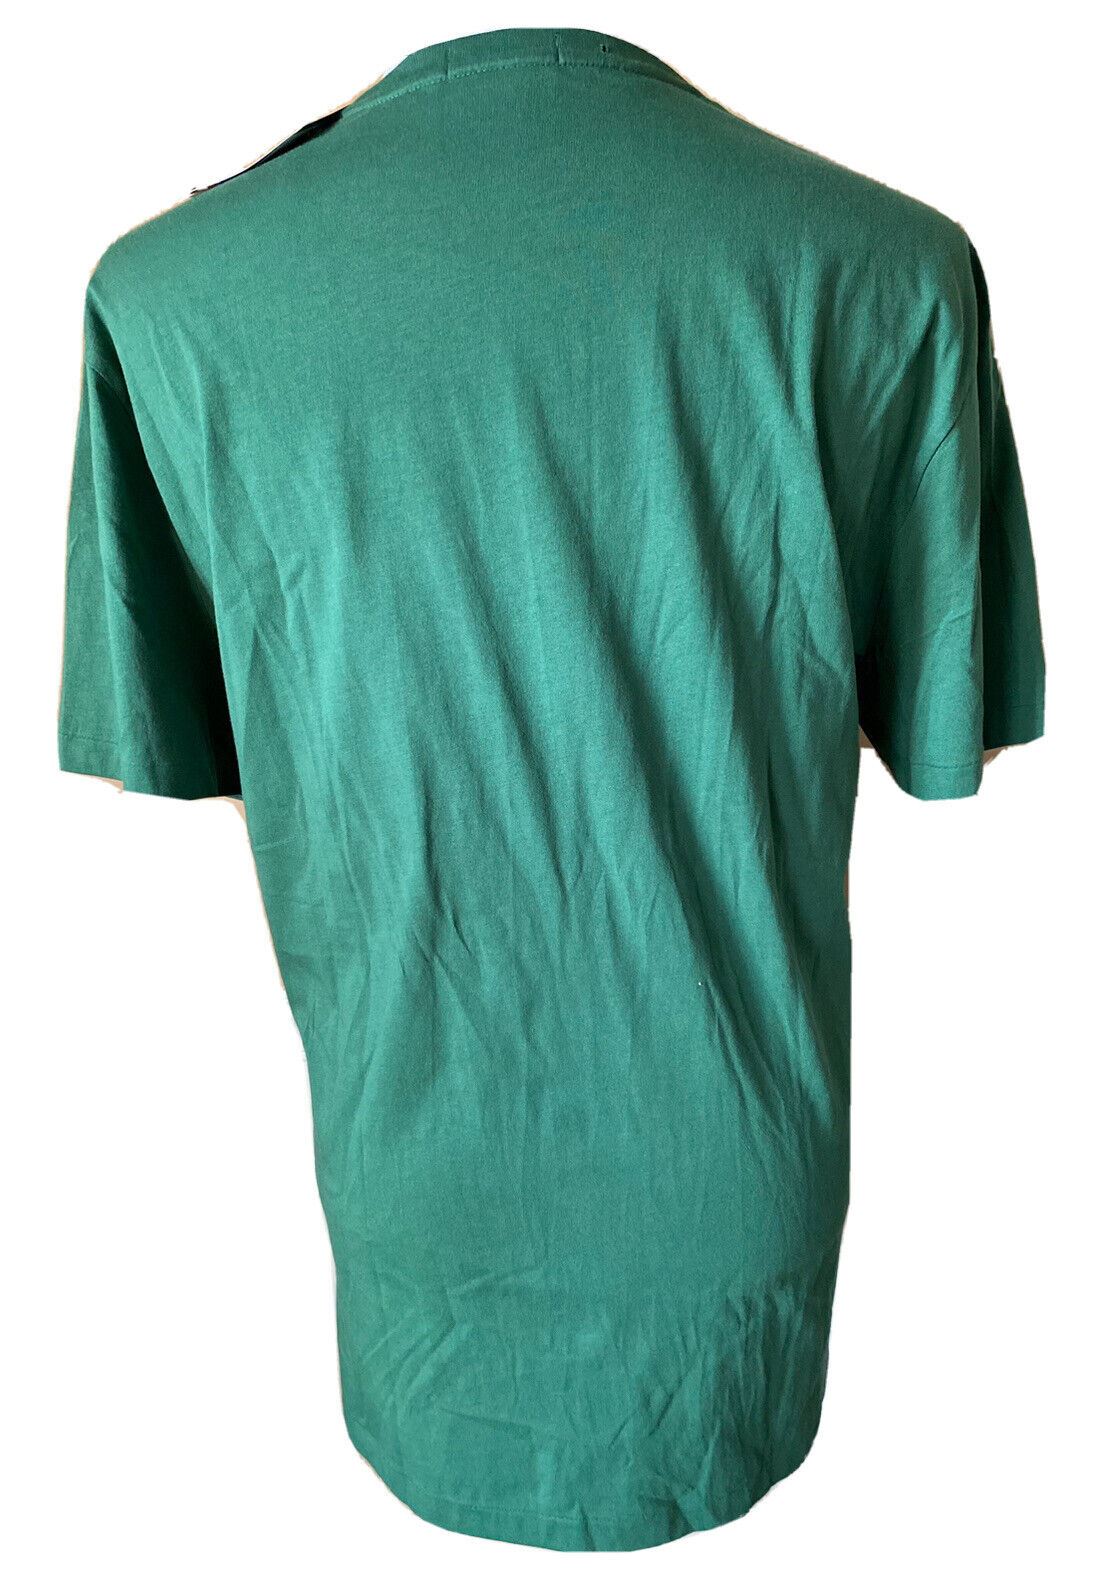 Neu mit Etikett: Polo Ralph Lauren Bear T-Shirt Grün L/G